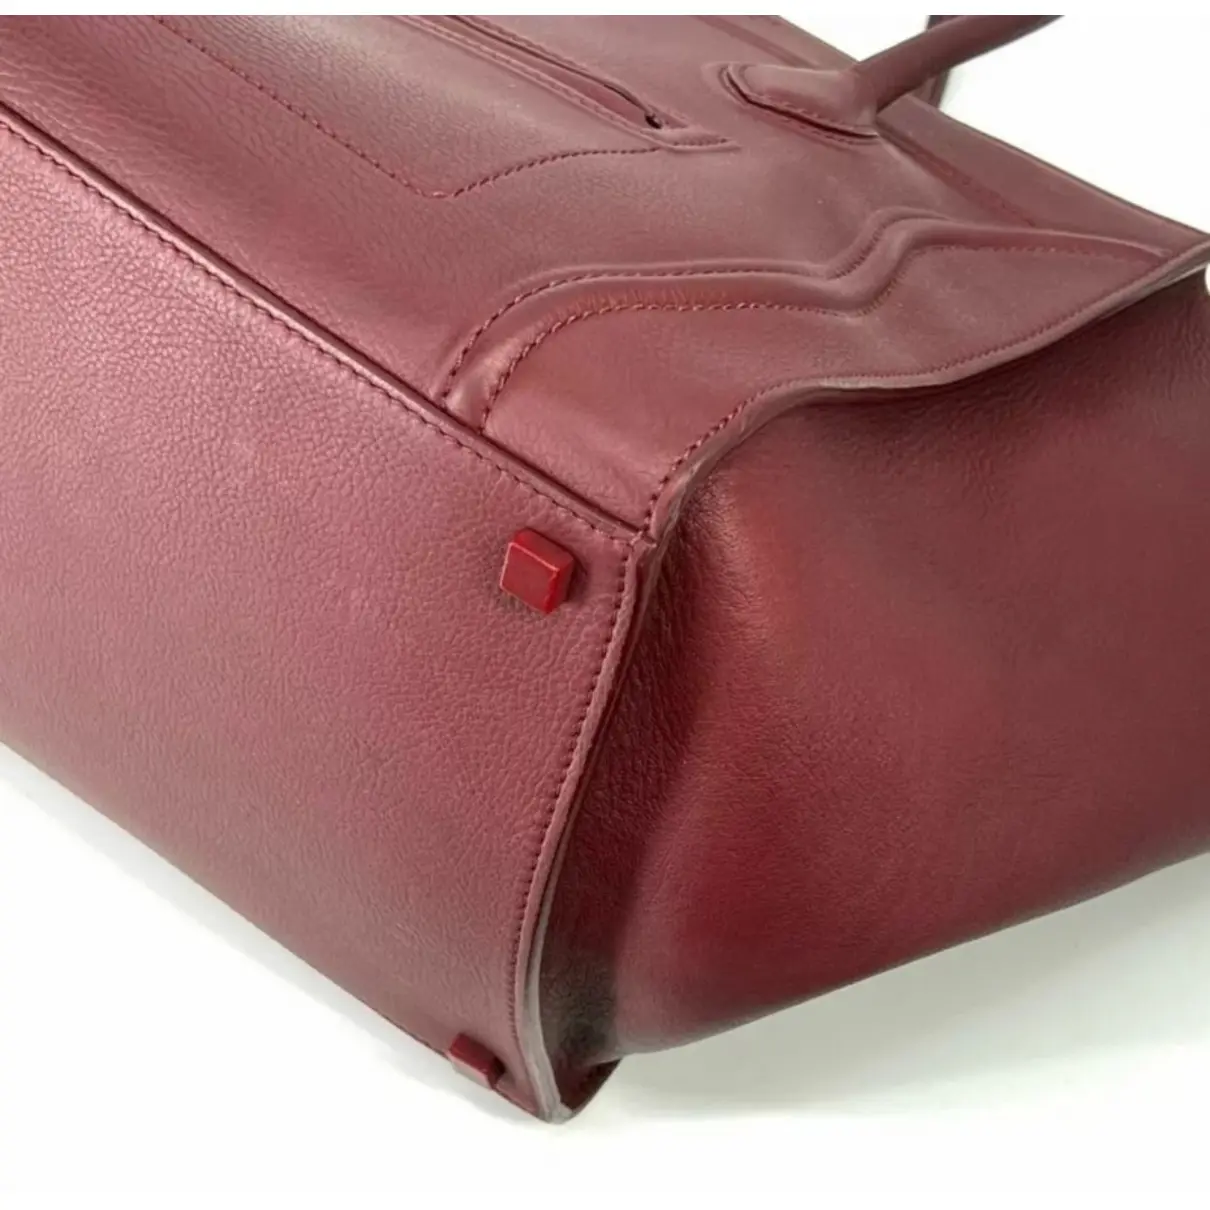 Luggage Phantom leather handbag Celine